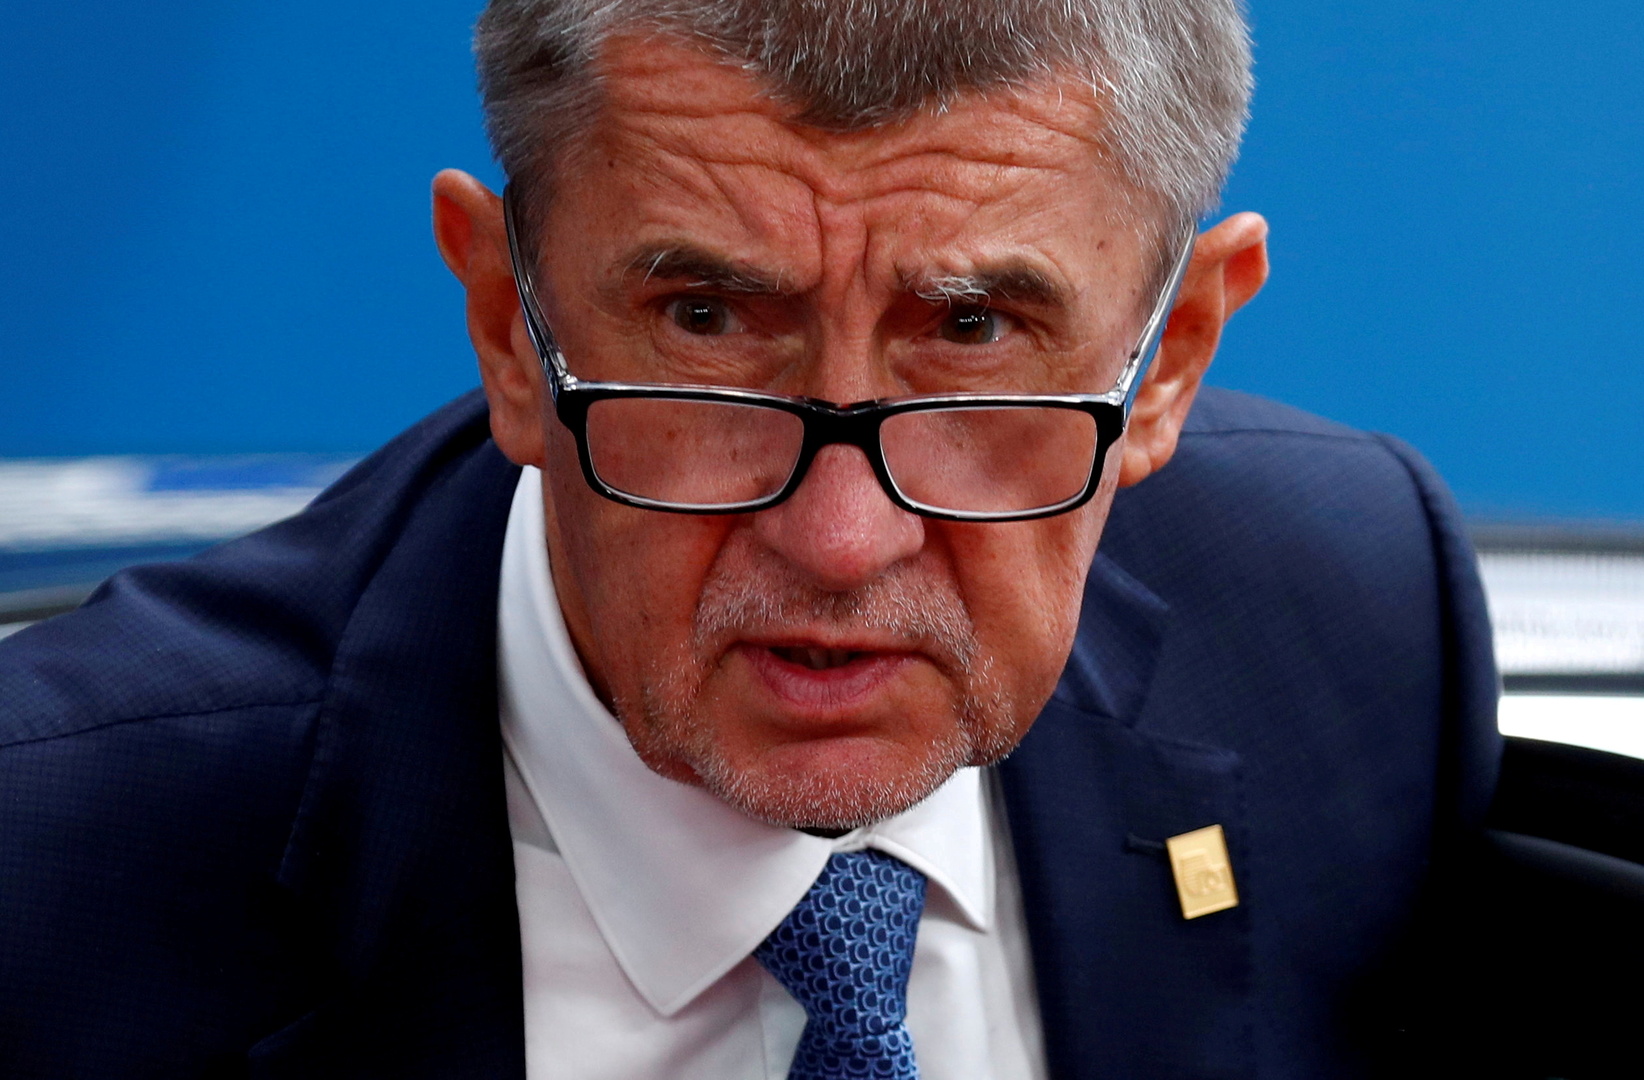 رئيس الوزراء التشيكي يتعرض للرشق بالبيض خلال استعراض كتابه الجديد